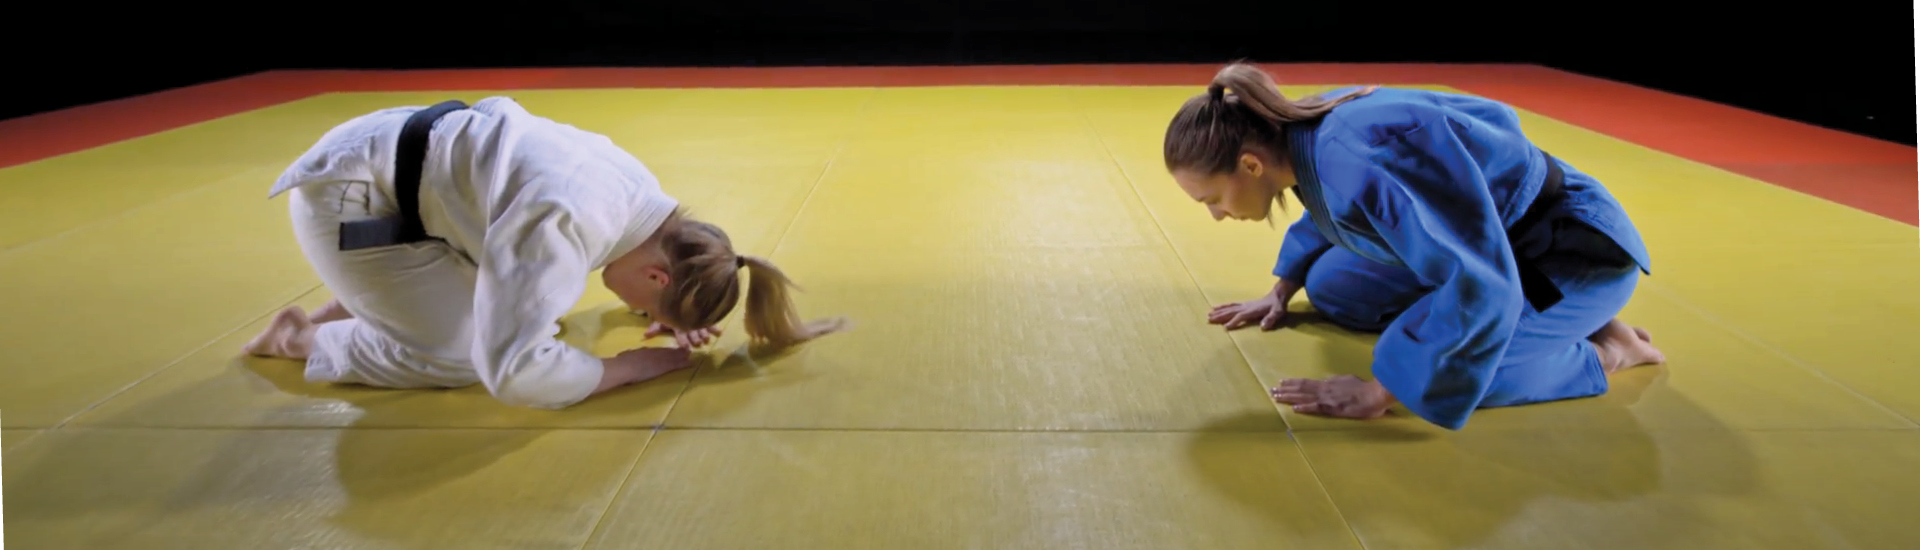 Duas atletas de artes marciais se curvam, ajoelhadas no chão, uma de frente para a outra, em sinal de respeito. Vestem kimonos tradicionais do esporte, nas cores branca - à esquerda - e azul - à direita. O chá é amarelo com bordas alaranjadas.